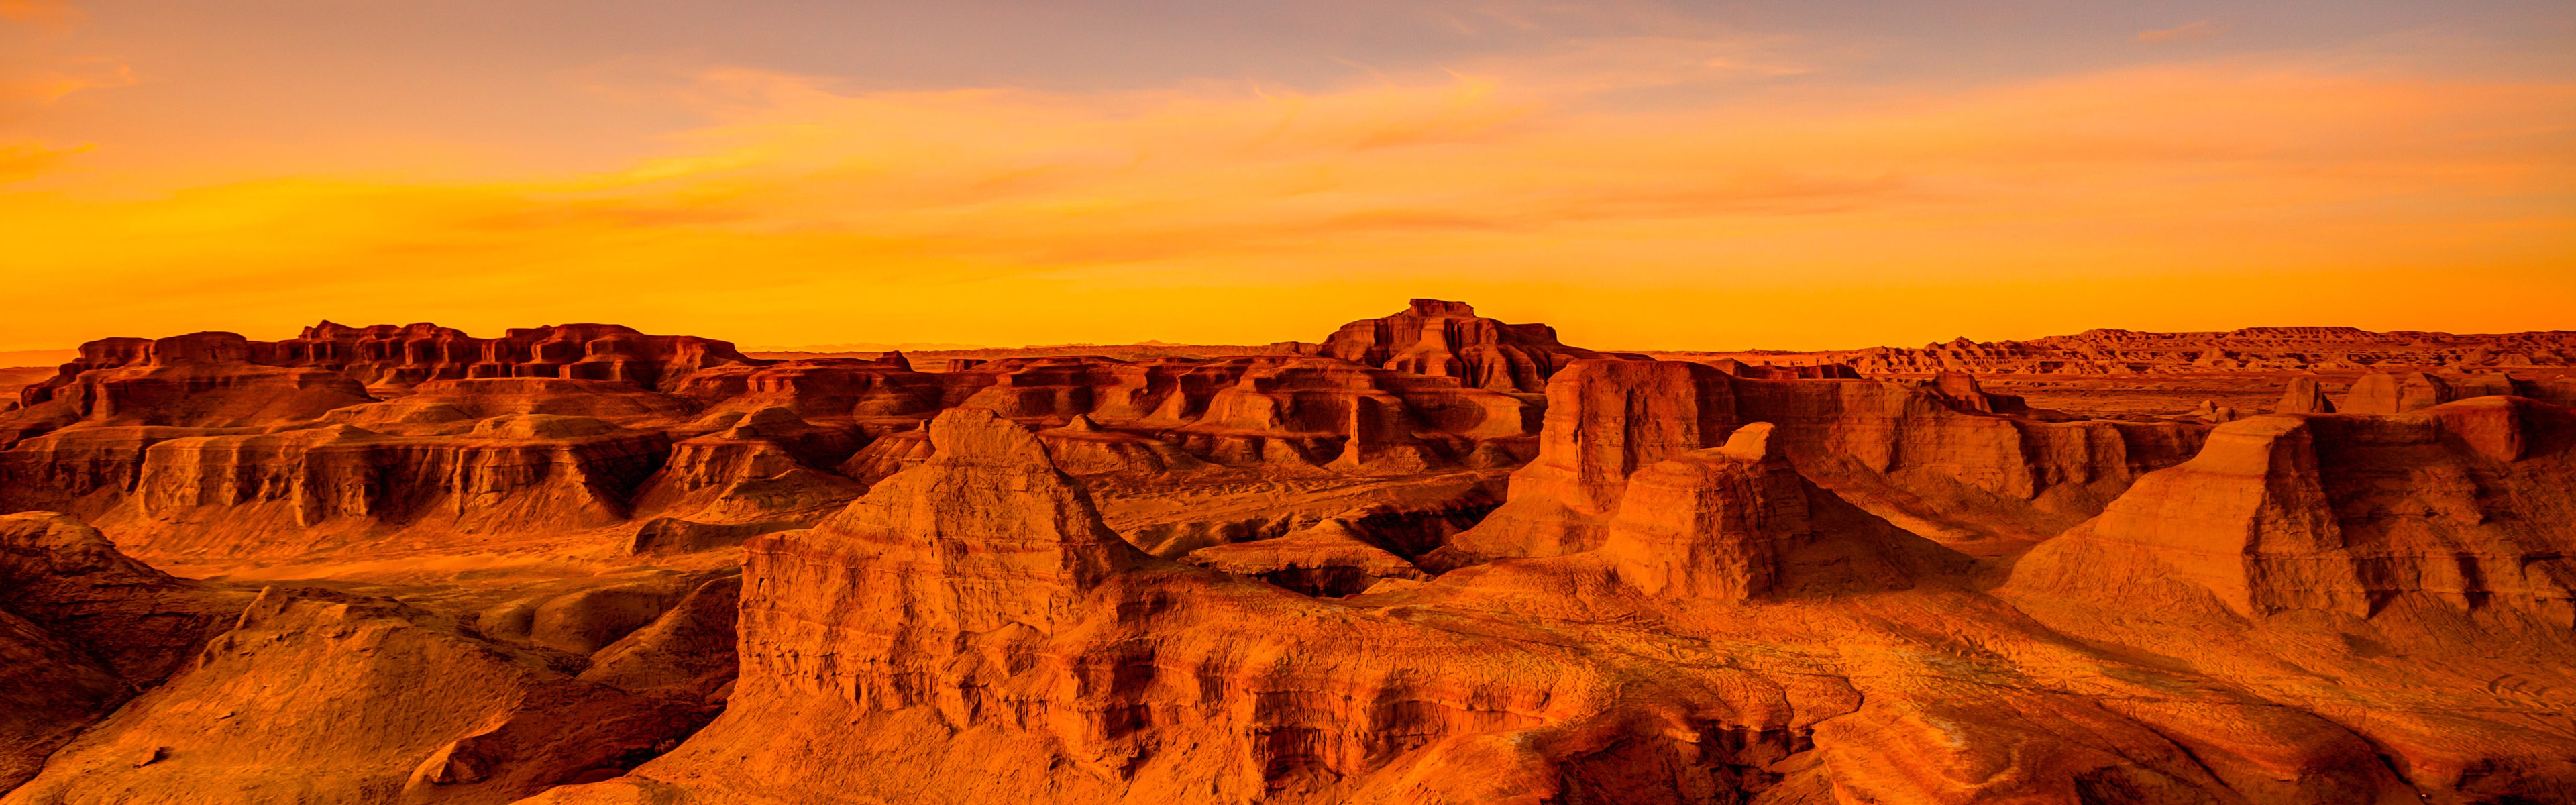 Les déserts chauds et arides, de Windows 8 fonds d'écran widescreen panoramique #6 - 3840x1200